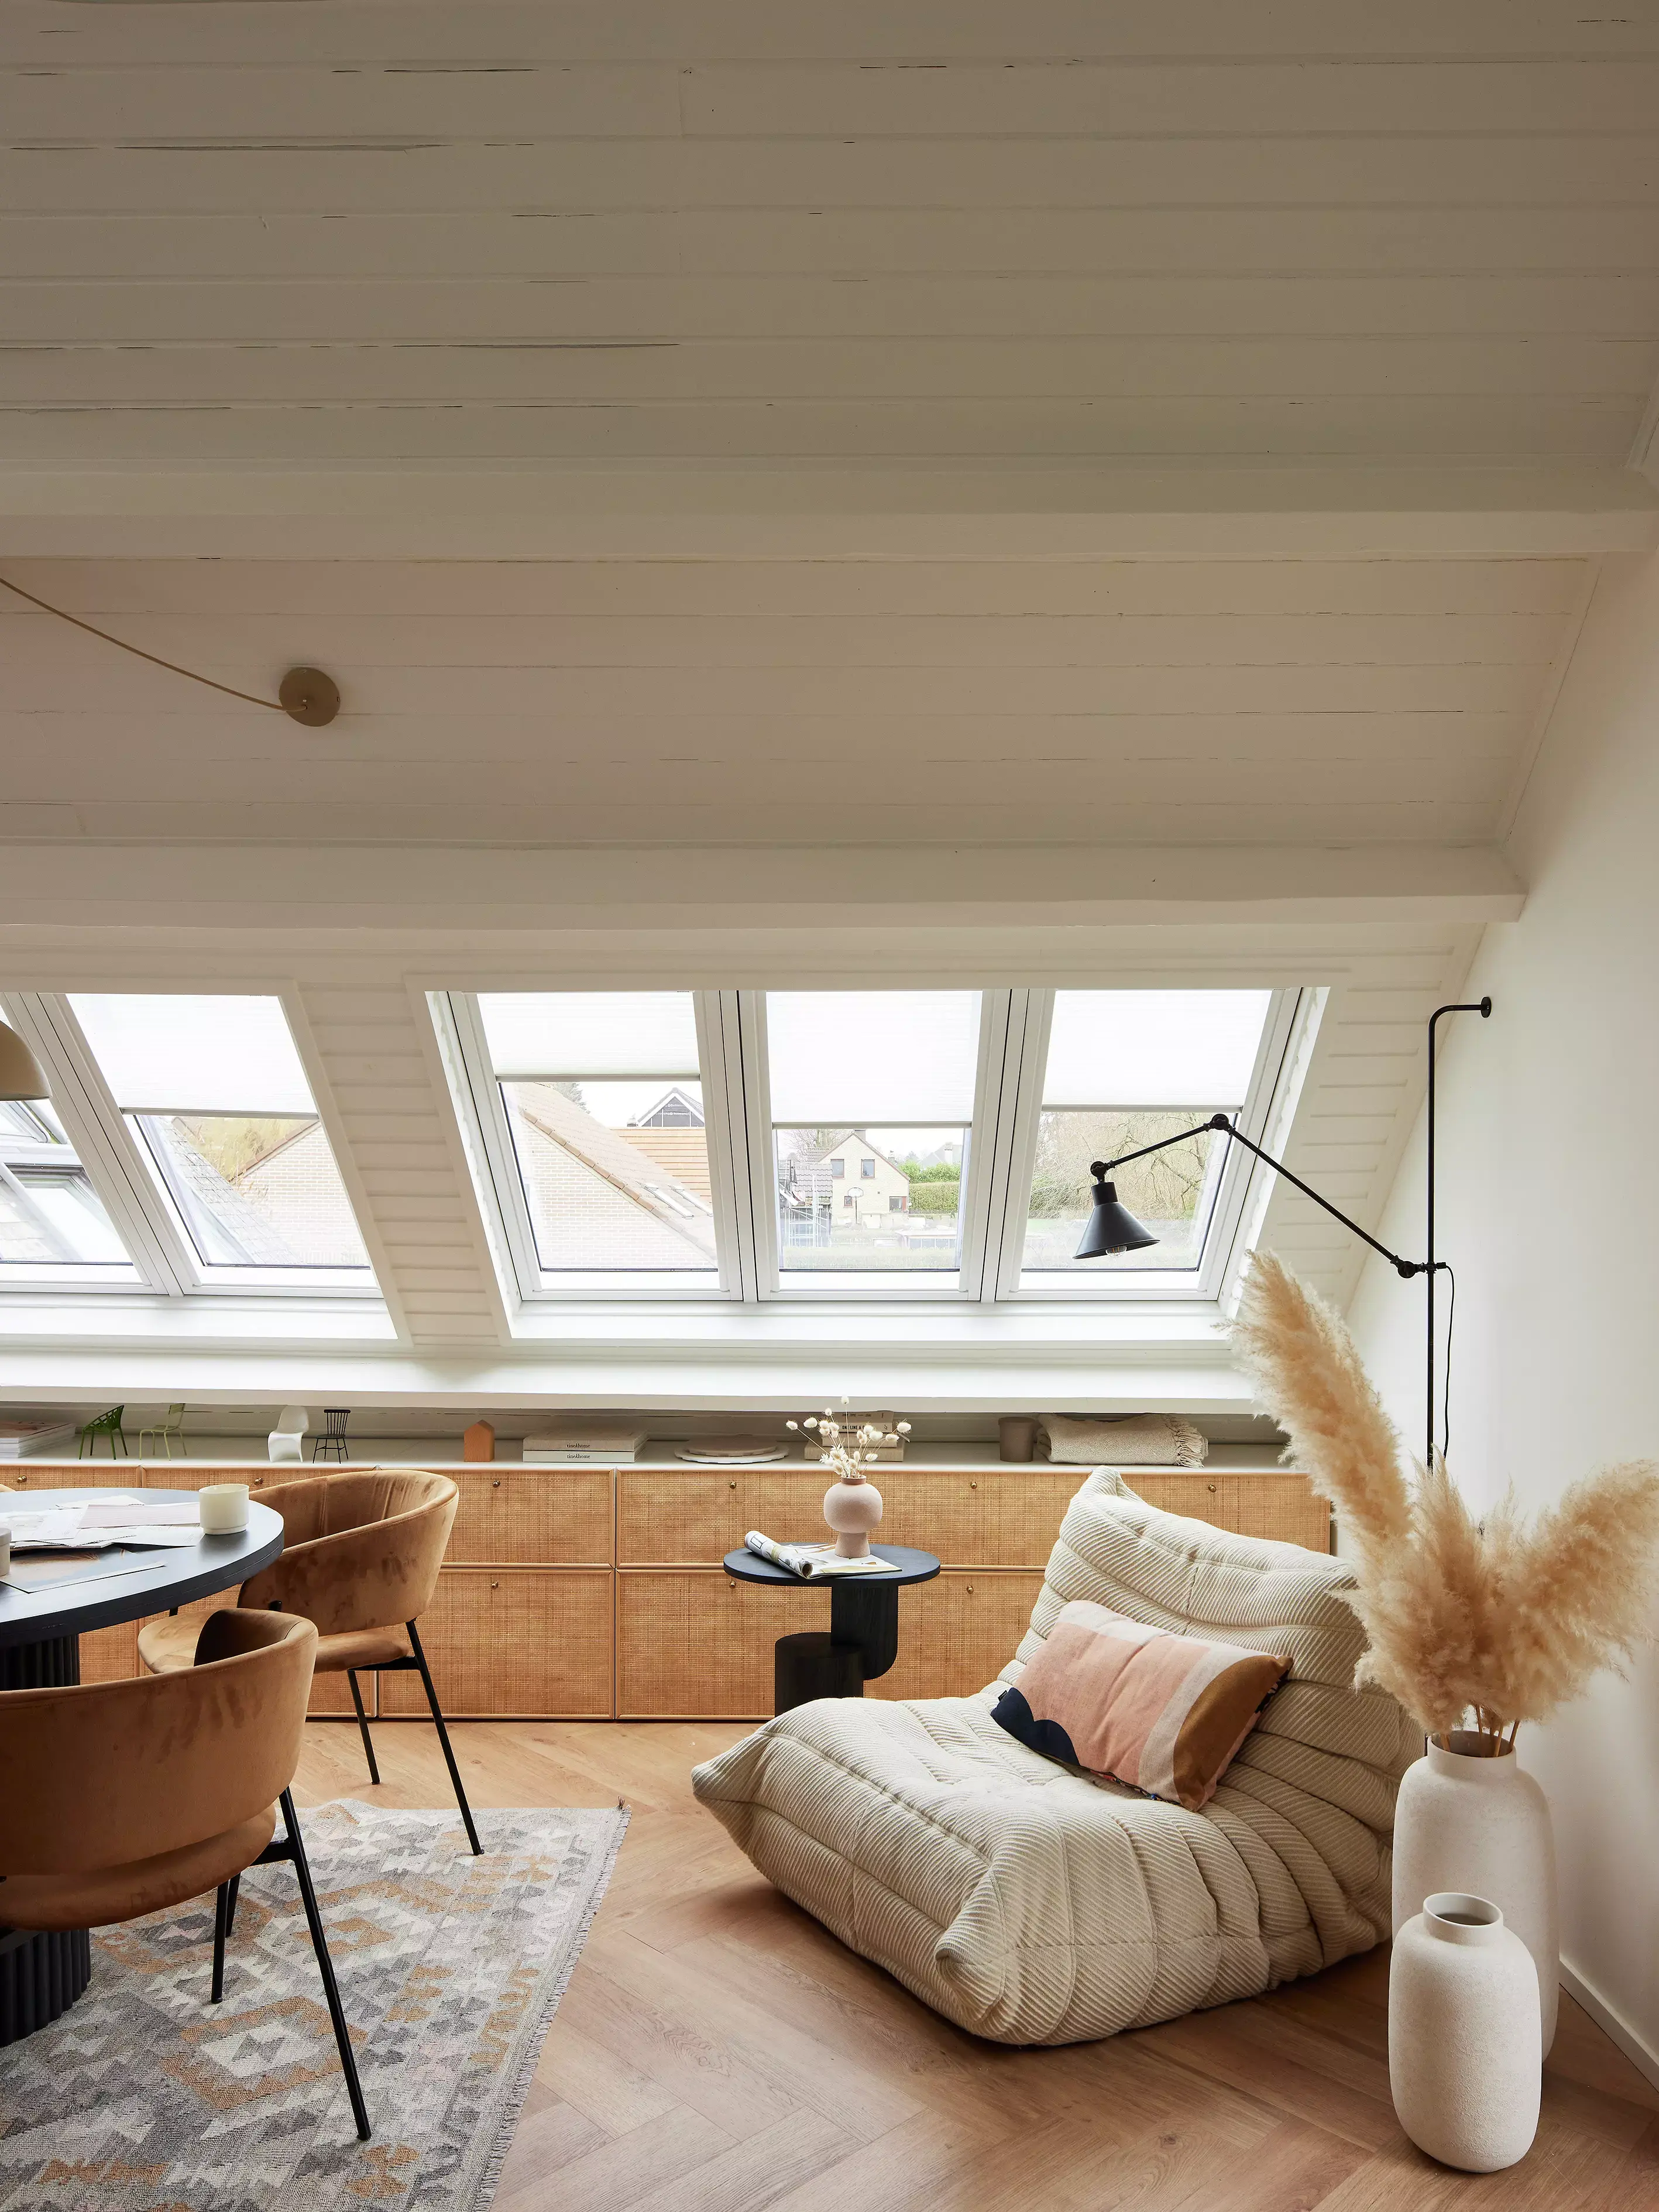 Bureau à domicile rénové dans le comble avec des fenêtres de toit VELUX et une décoration chaleureuse.